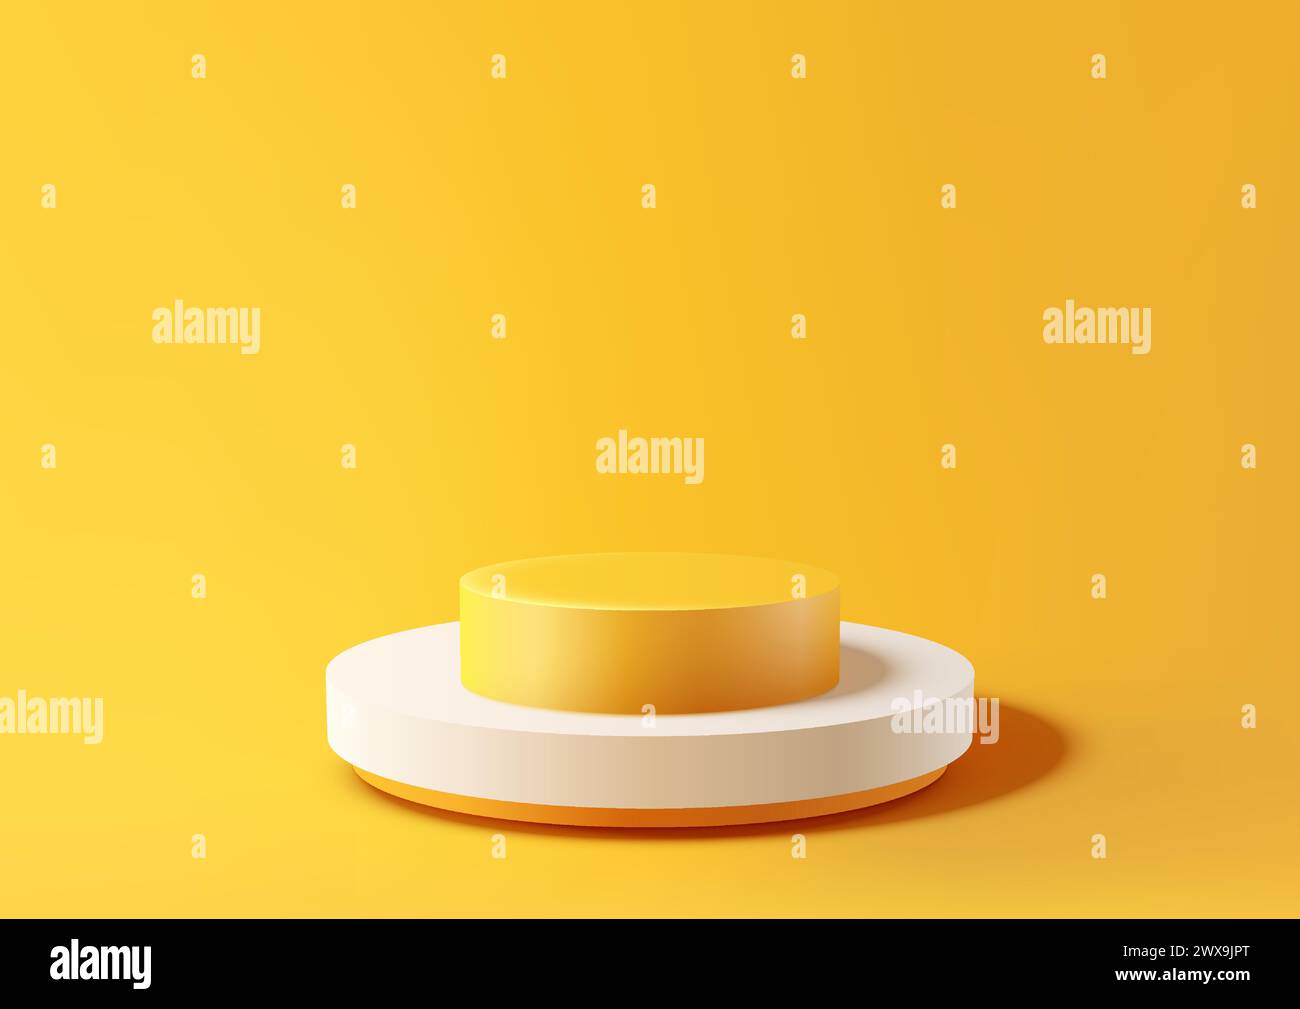 Eine einfache 3D-Szene mit einem weißen Podium auf einer gelben Plattform, vor gelbem Hintergrund. Produktanzeige, minimales Design. Vektorabbildung Stock Vektor